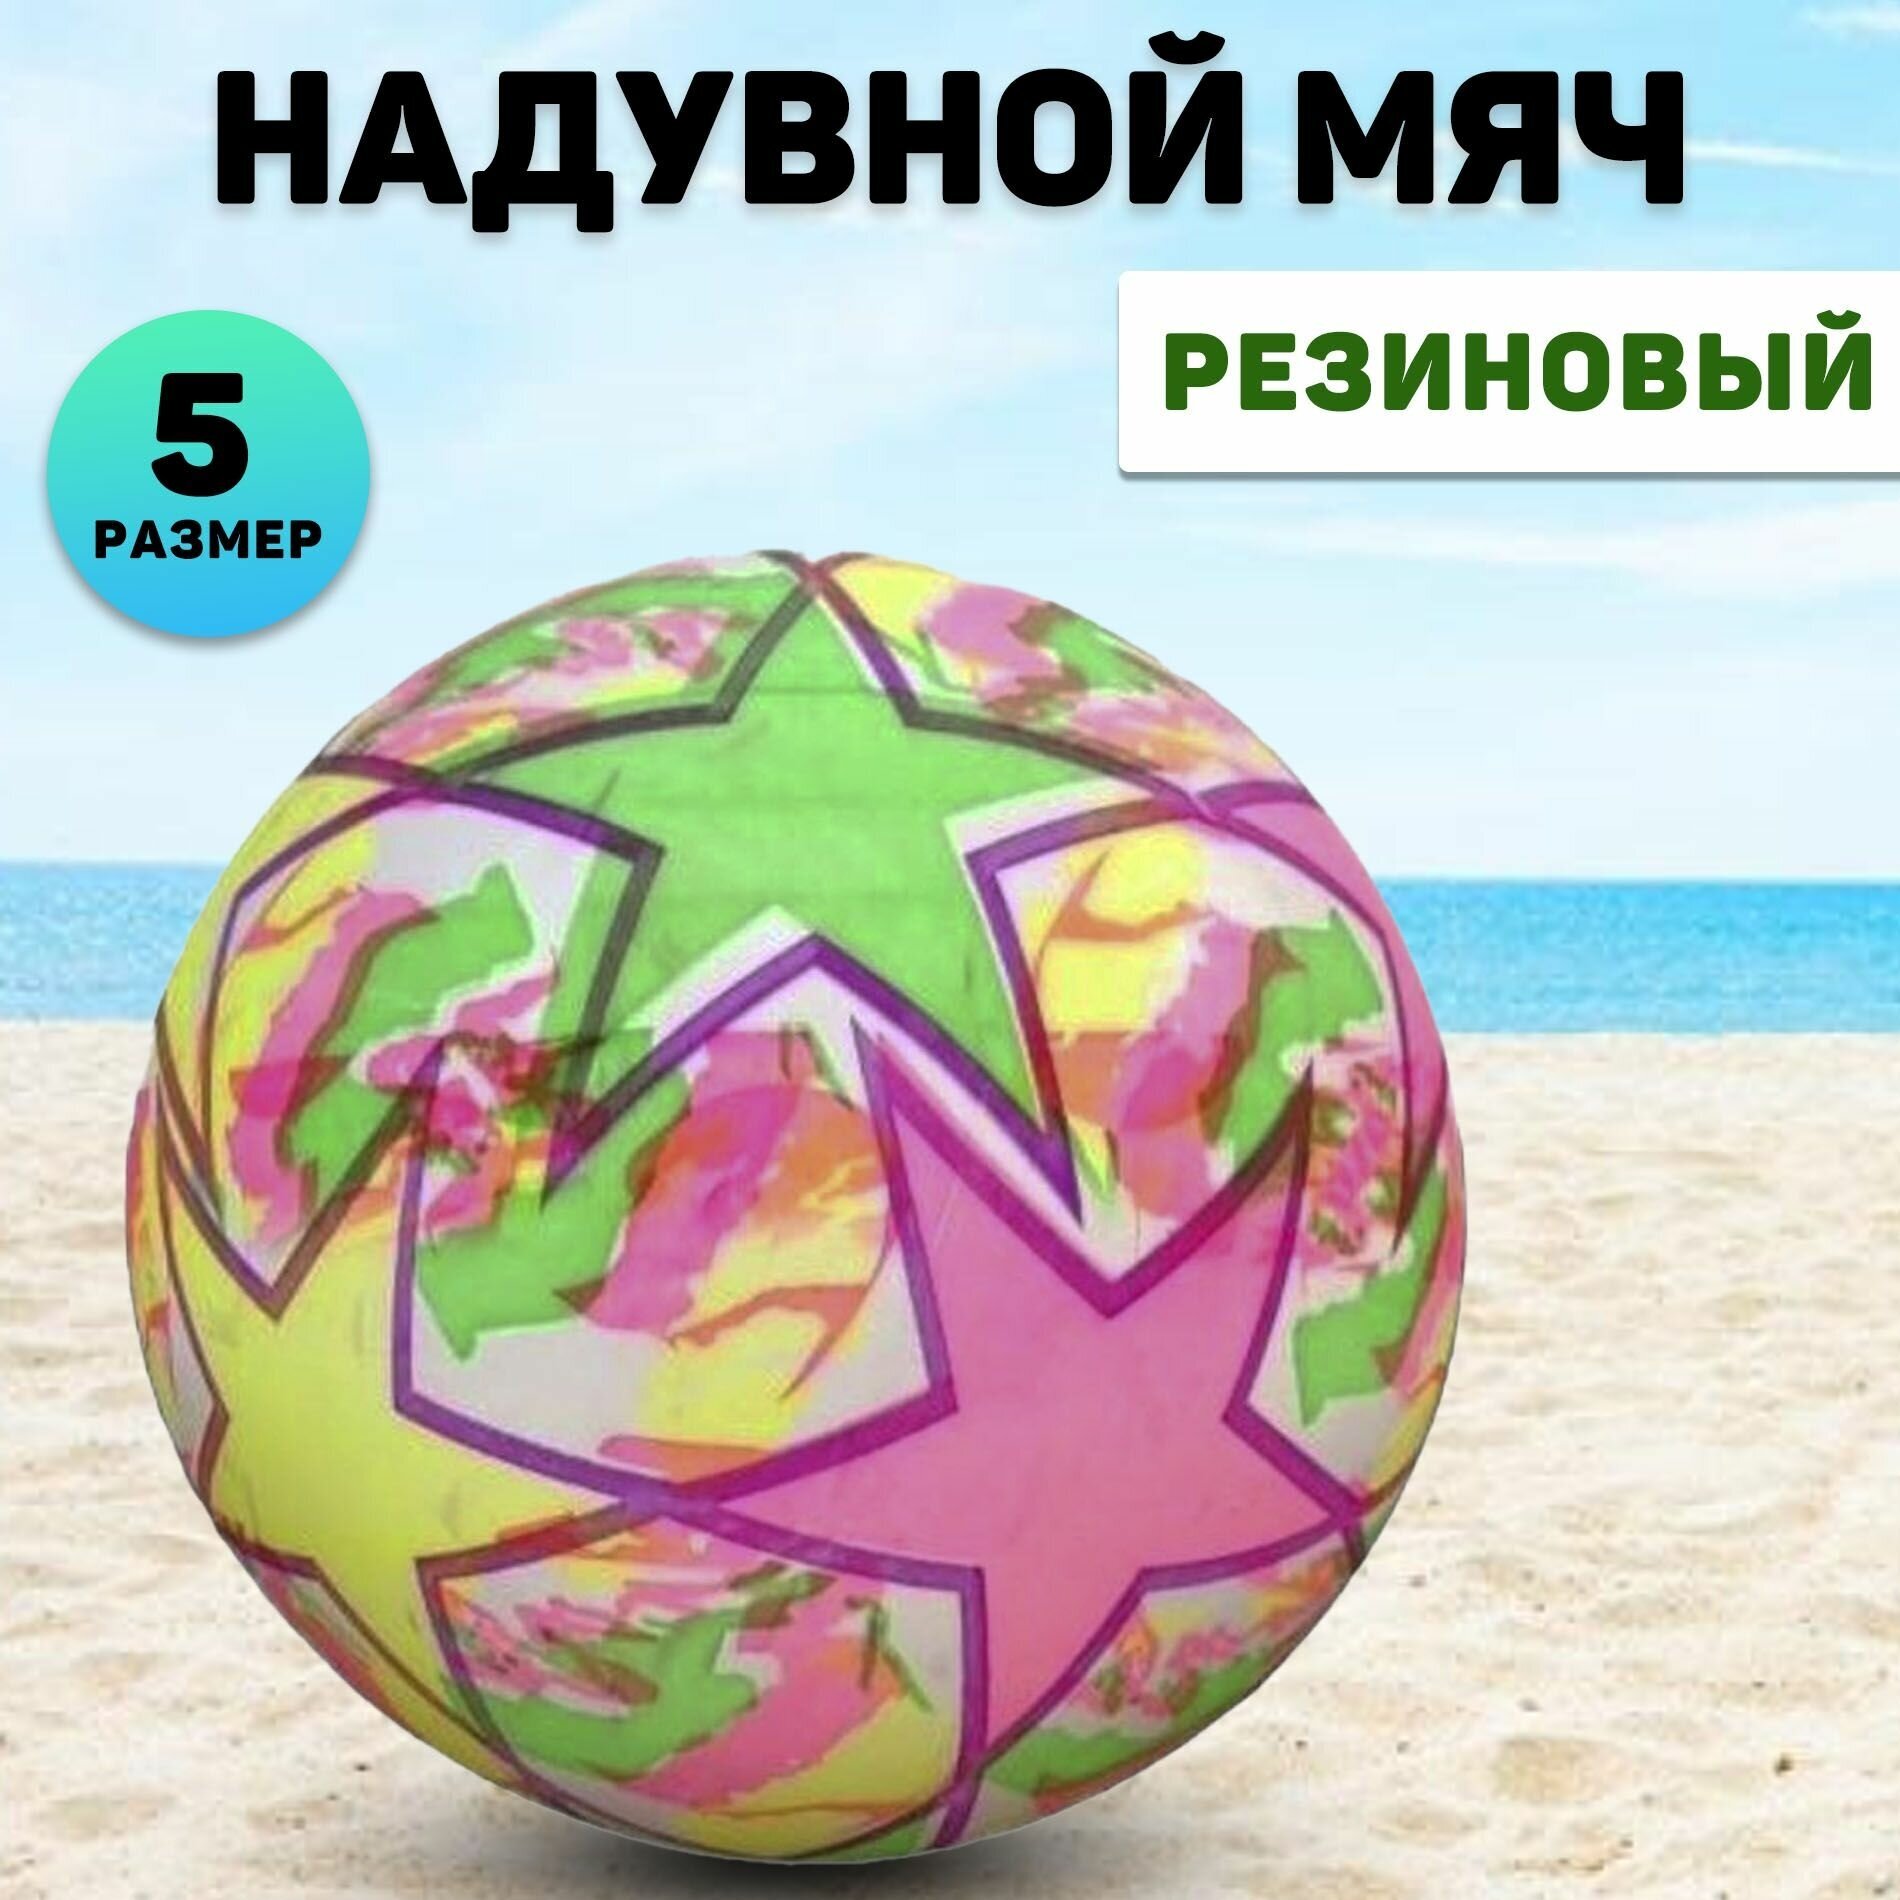 Мяч Miksik, резиновый, для детей от 1 до 9 лет, пол унисекс, 23 см в диаметре